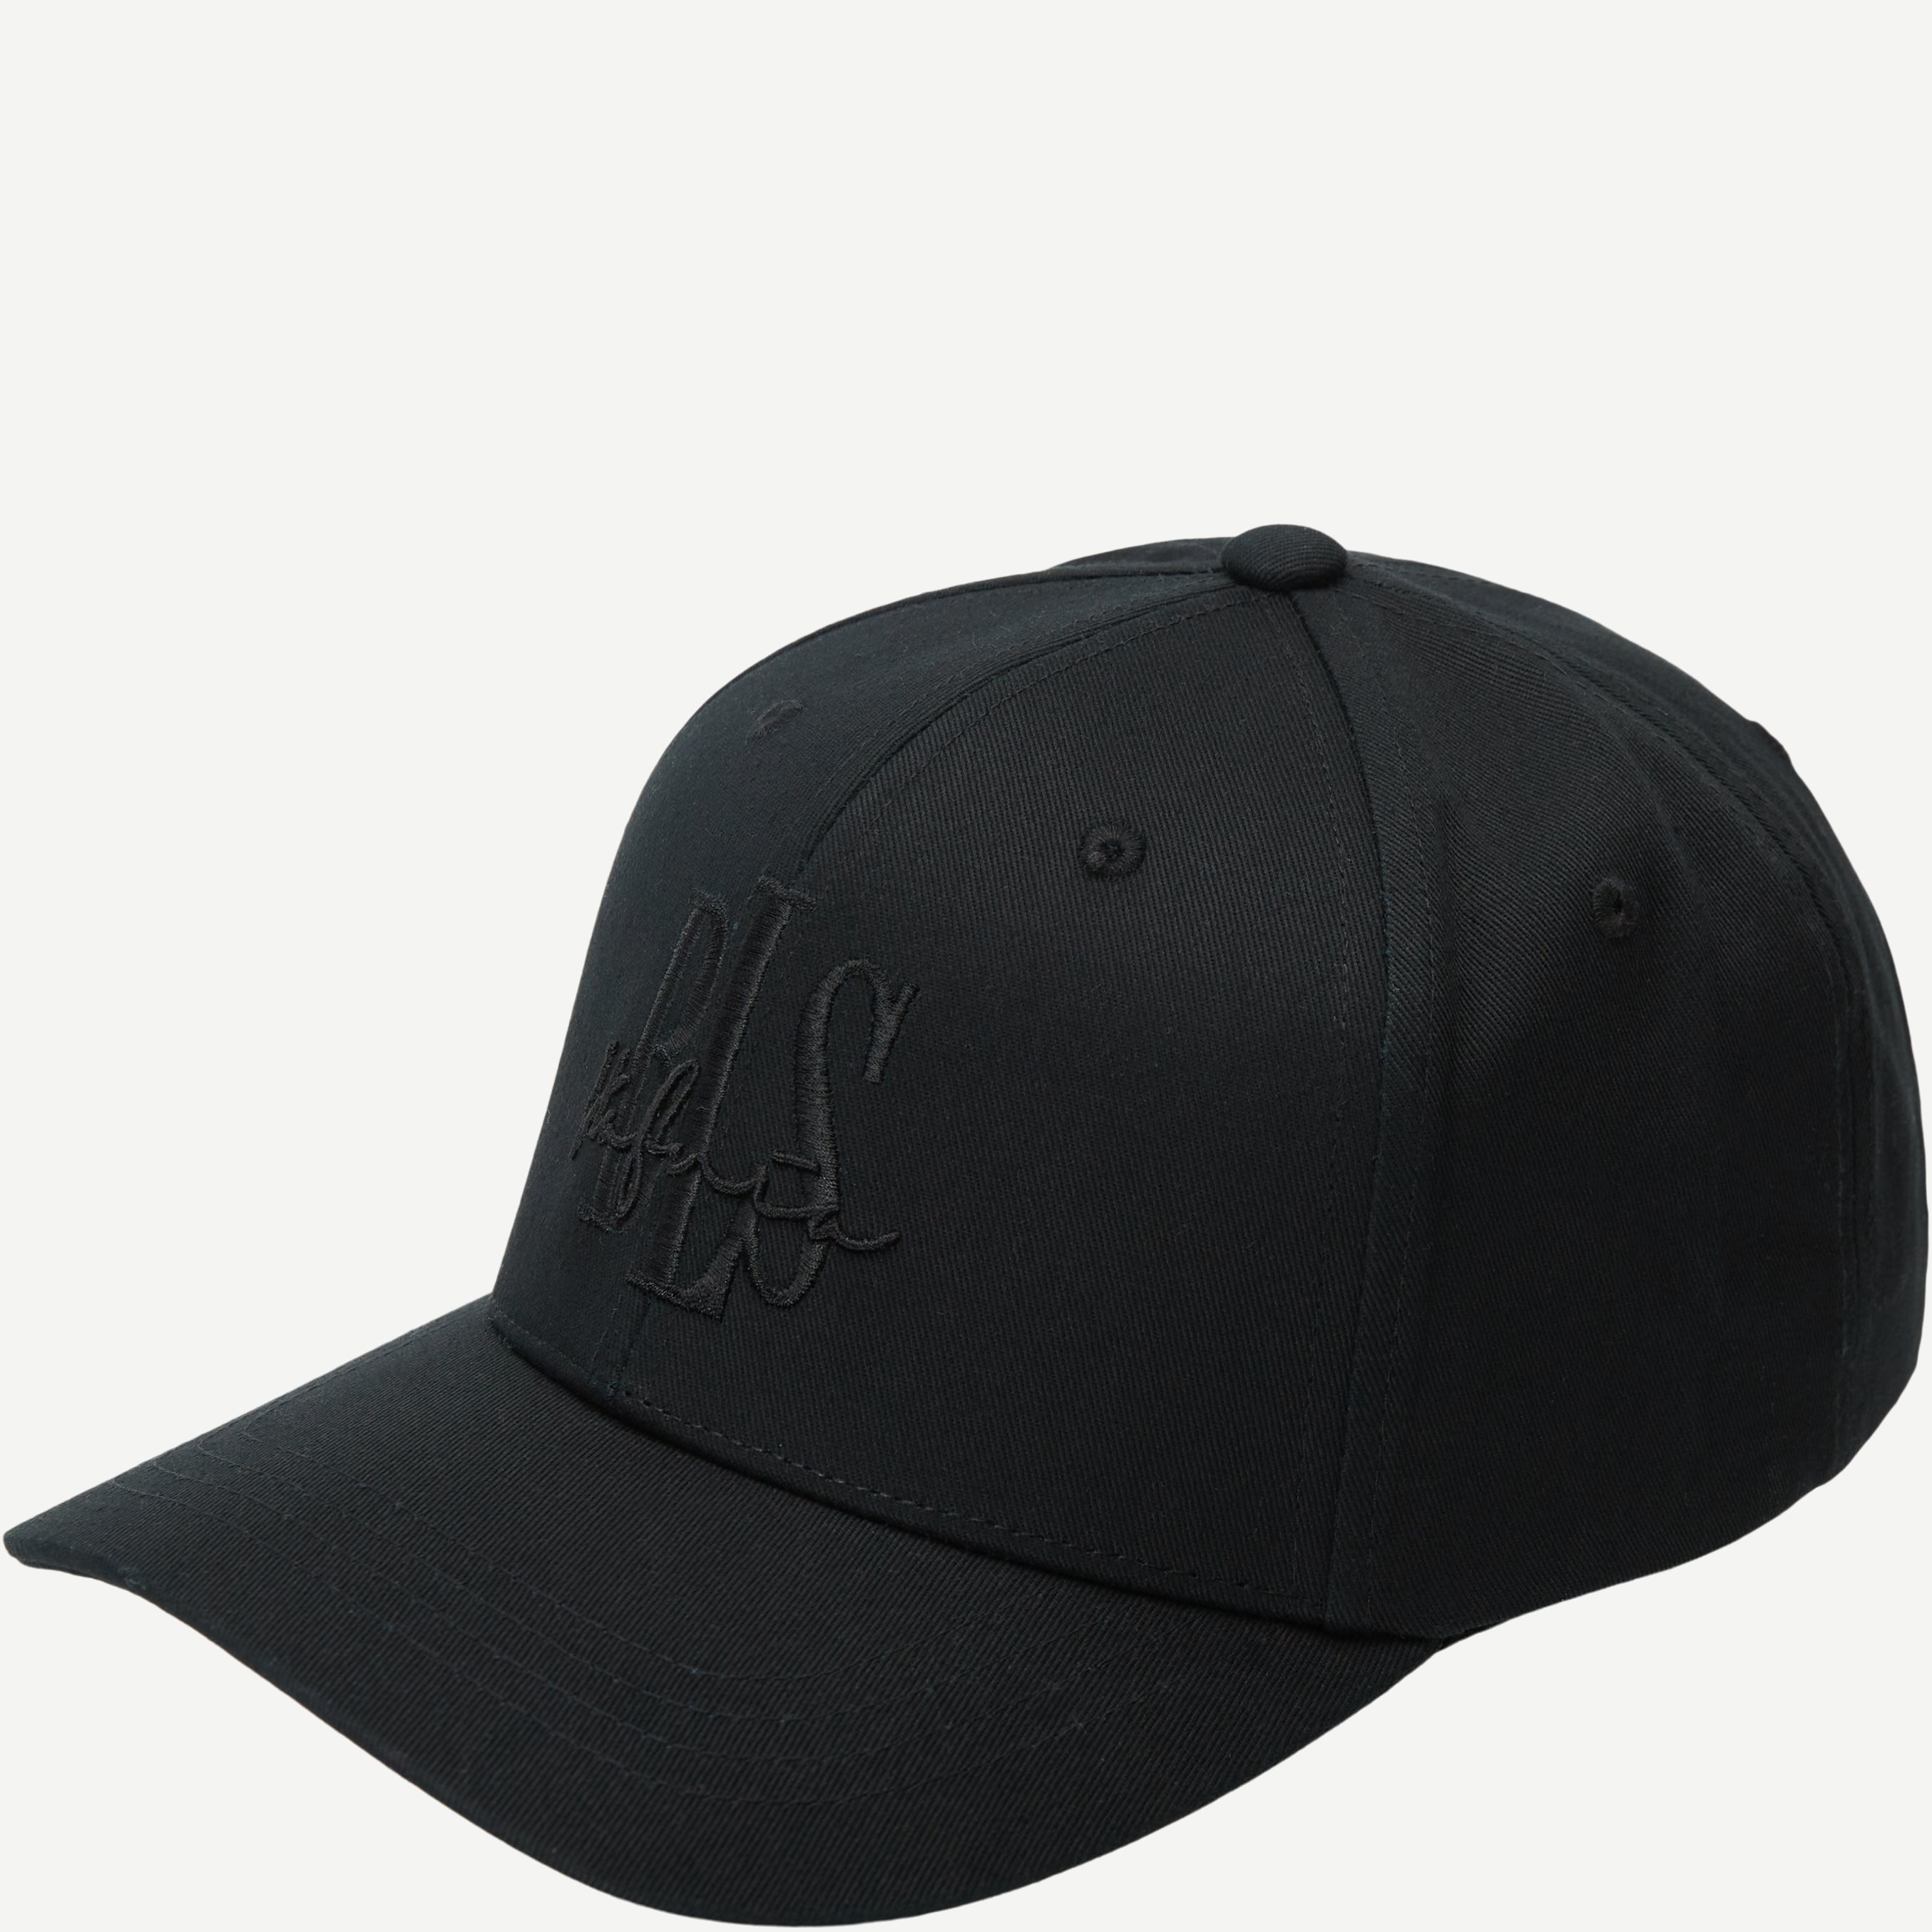 BLS Caps SIGNATURE CAP Black